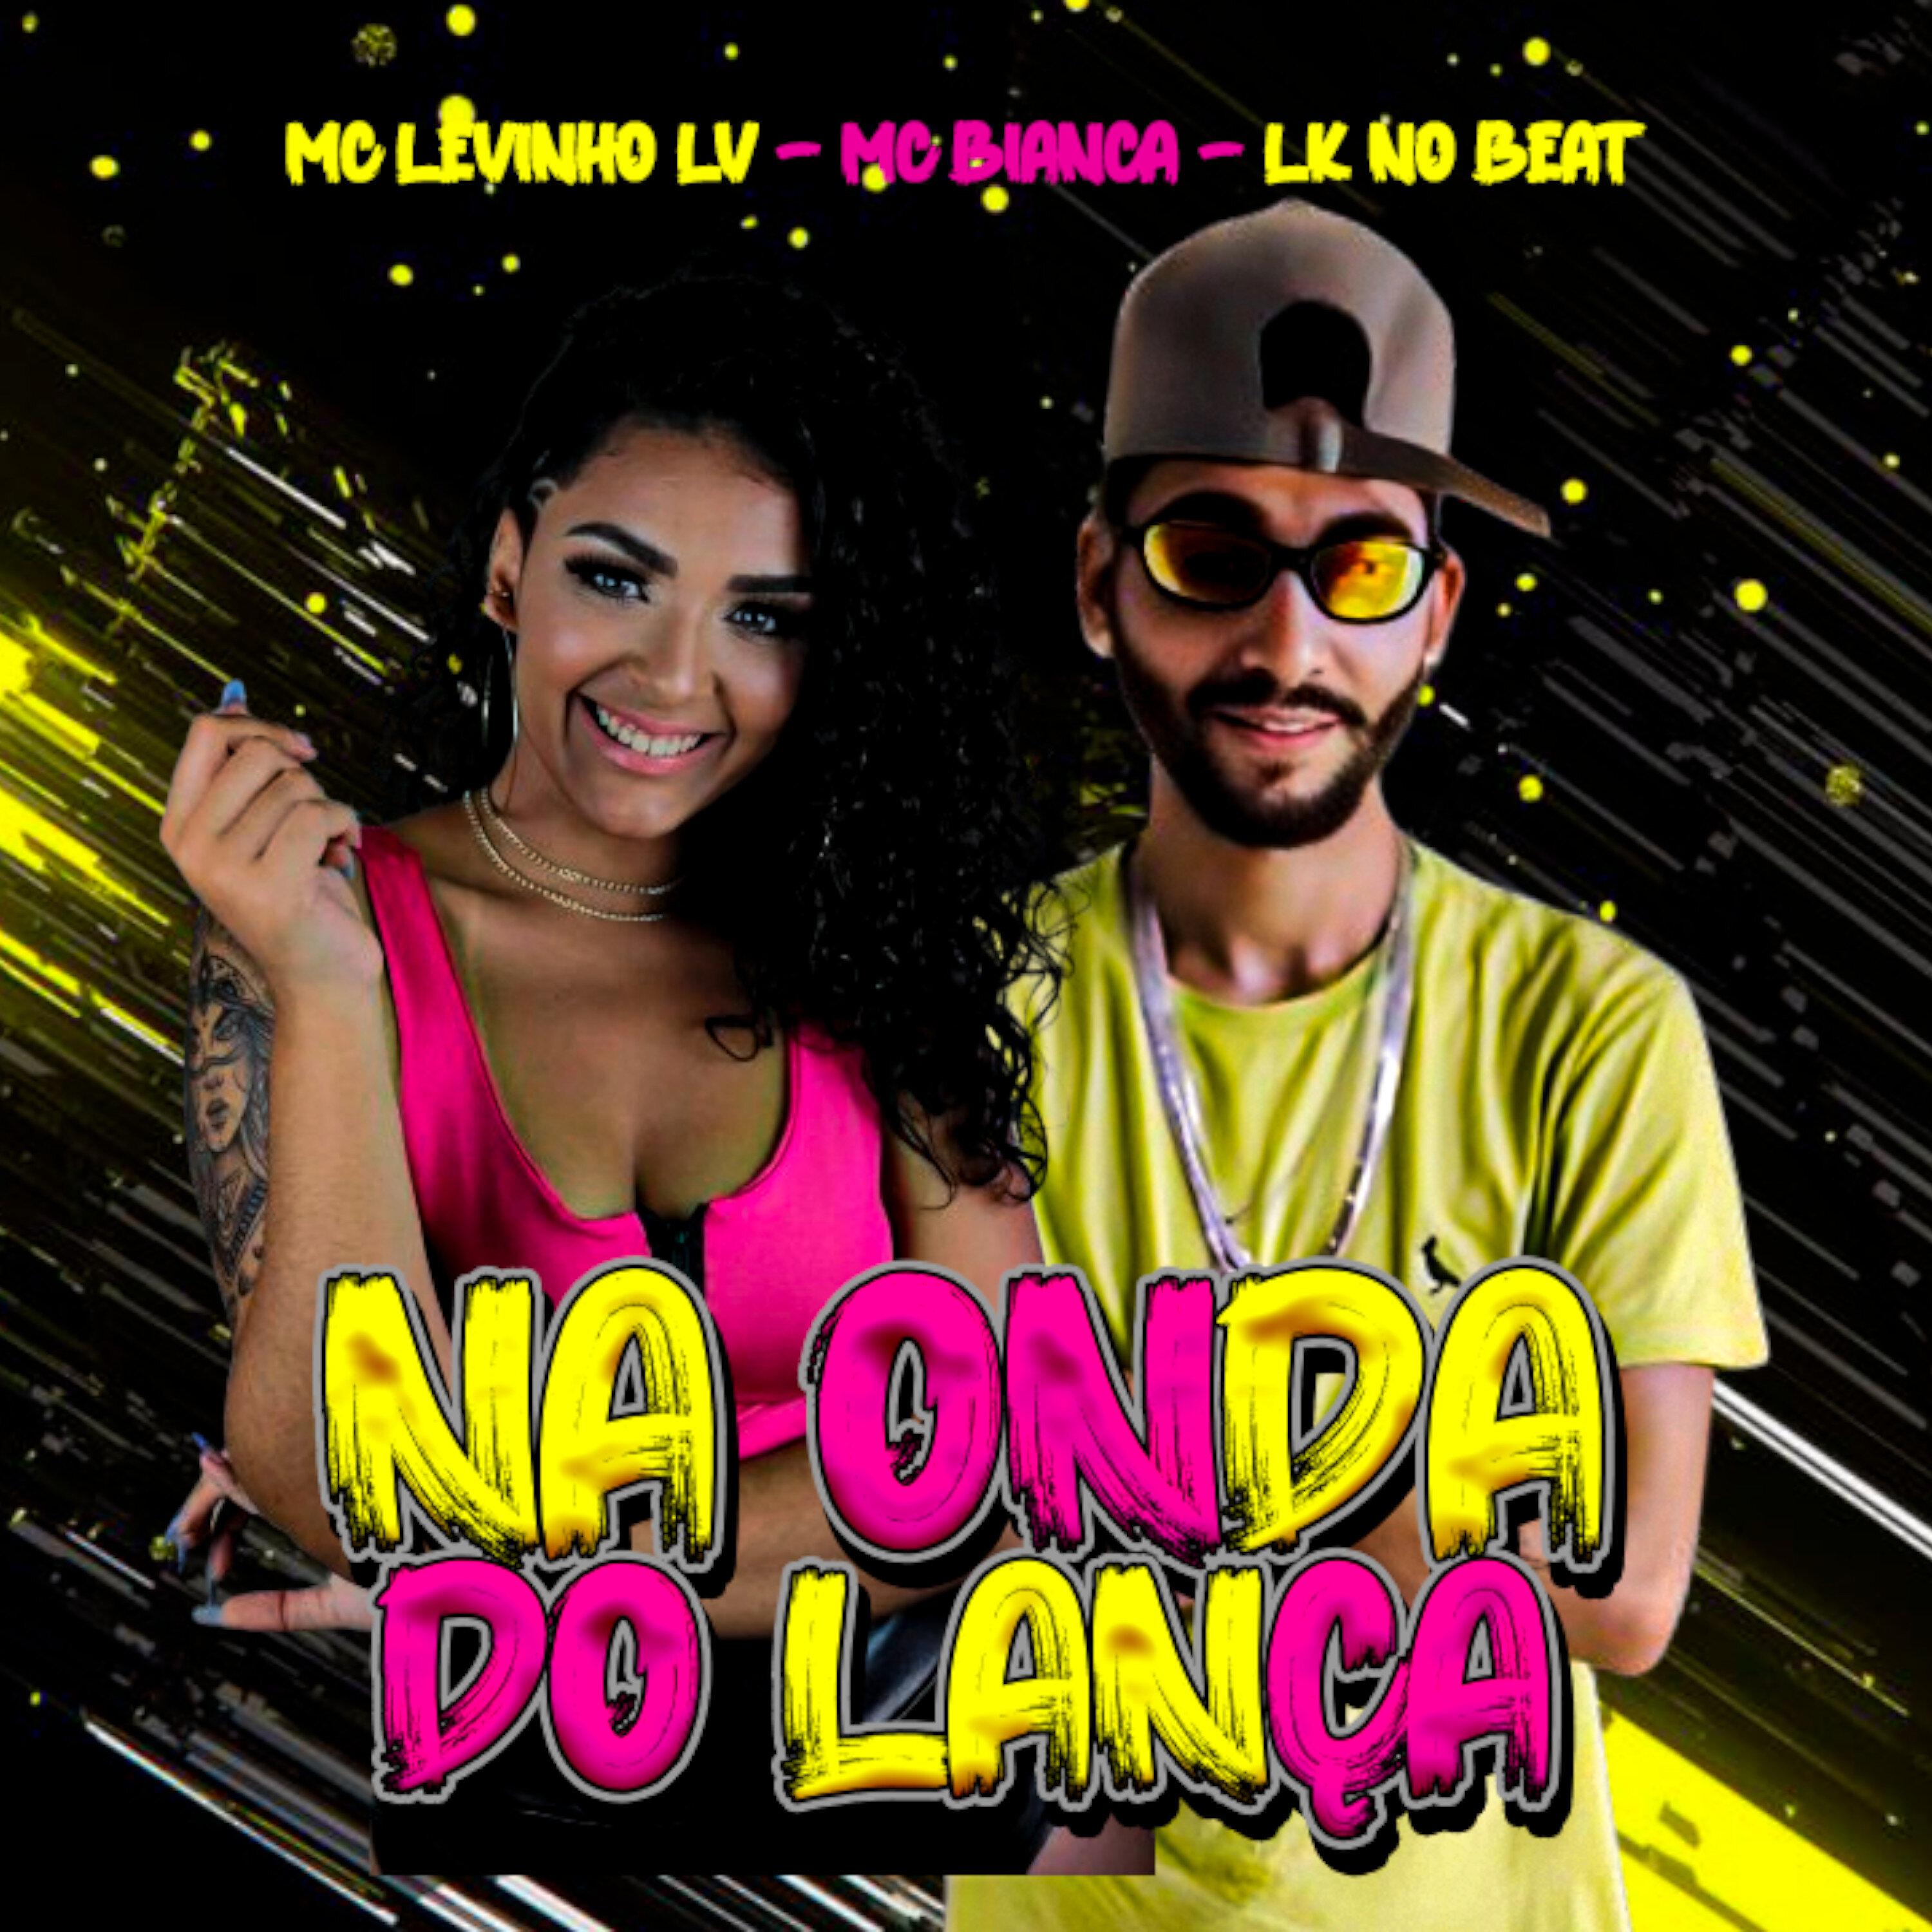 Mc Levinho LV - Na Onda do Lança (feat. MC Bianca)